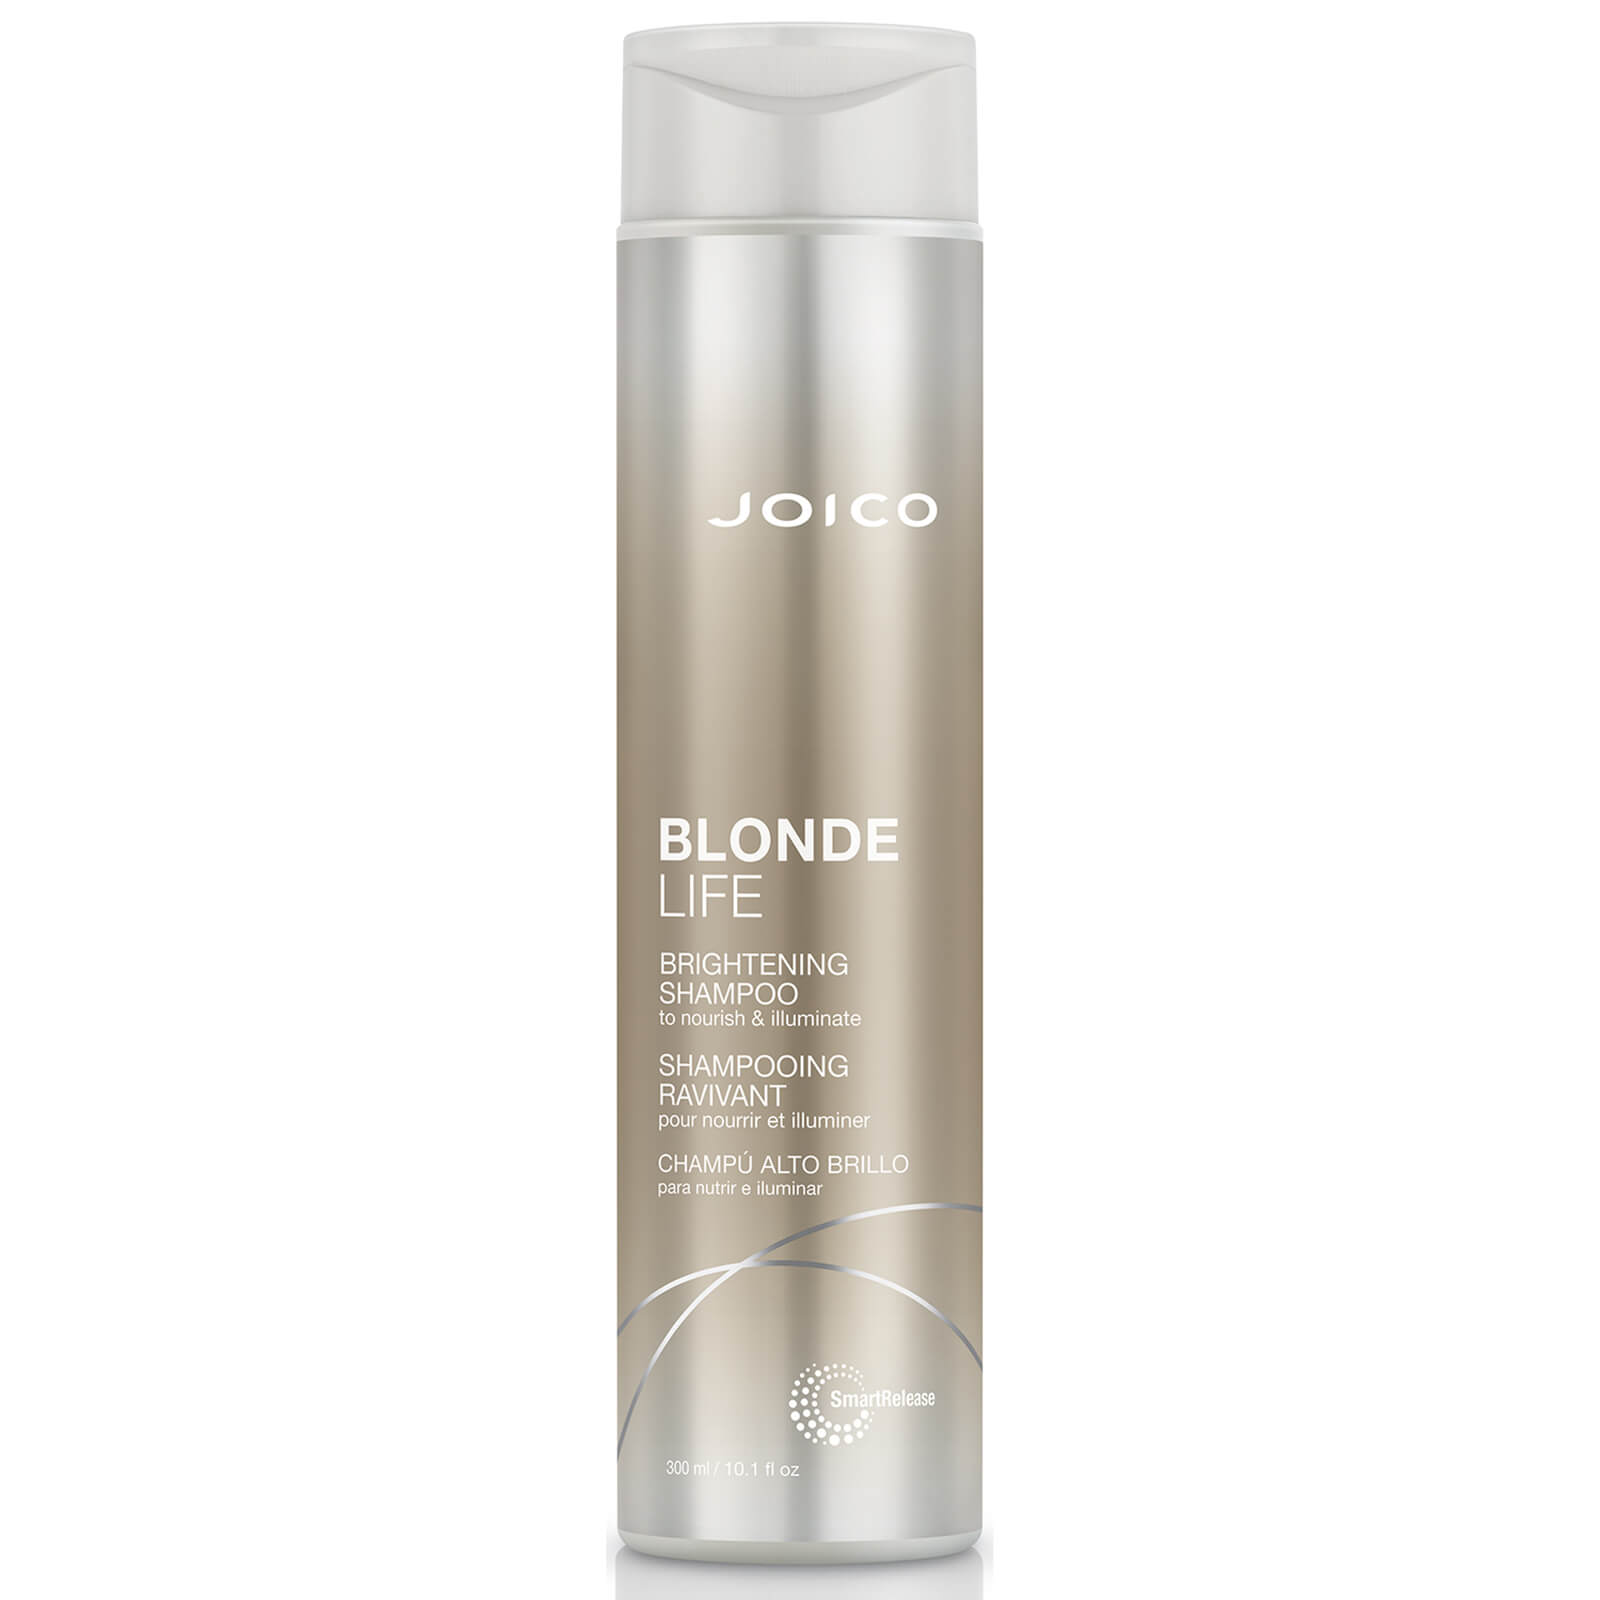 JOICO Blonde Life Brightening Shampoo 300ml von Joico